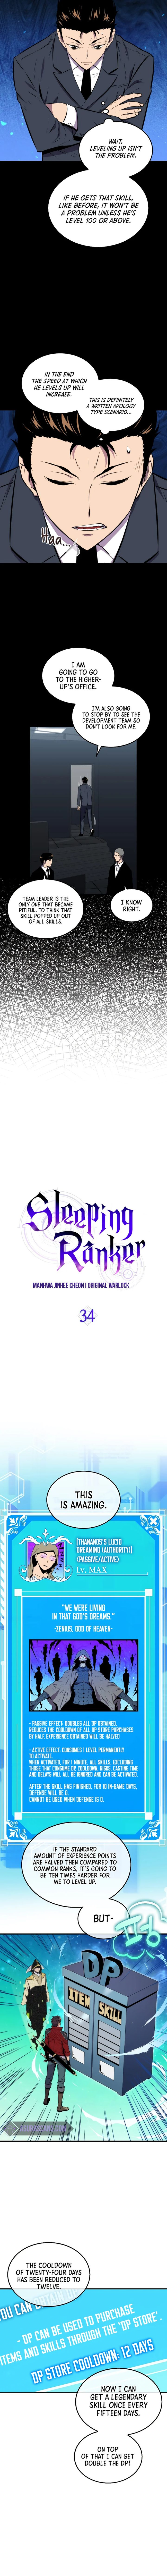 sleeping_ranker_34_4